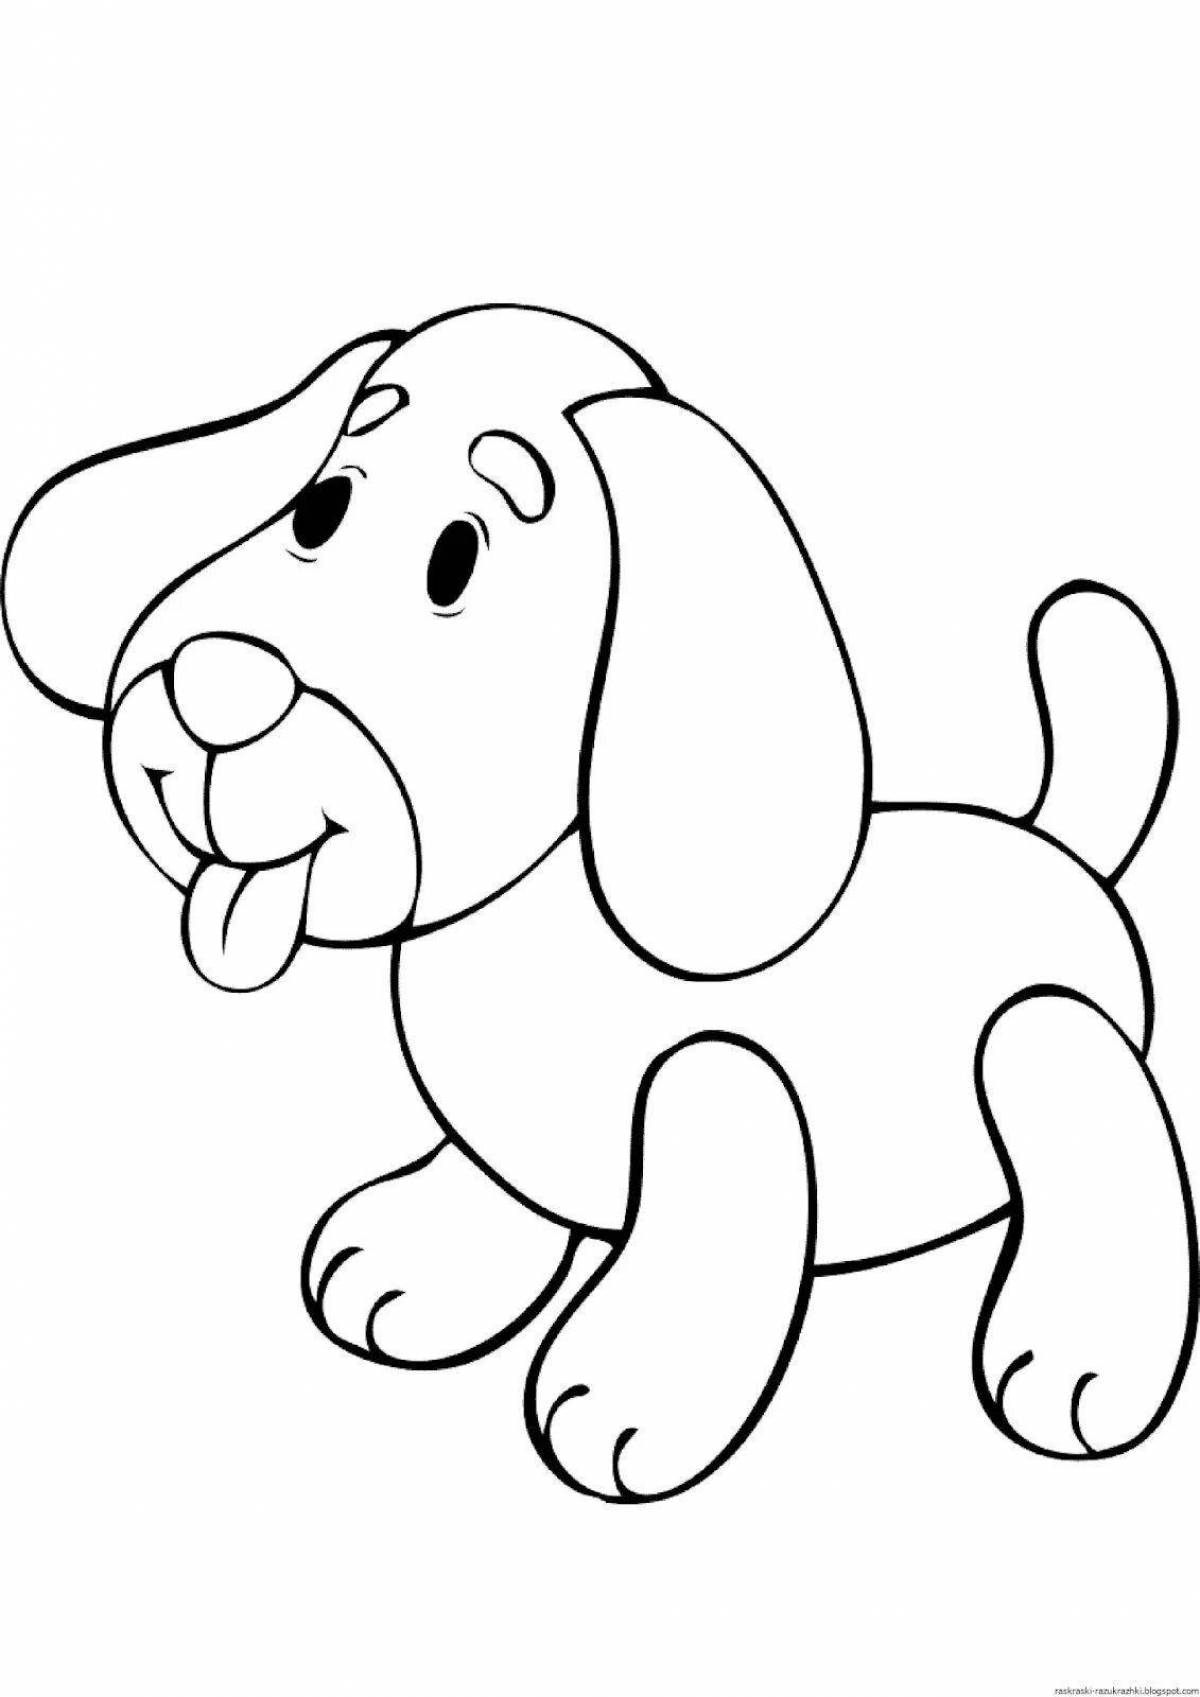 Озорная раскраска собака для детей 4-5 лет